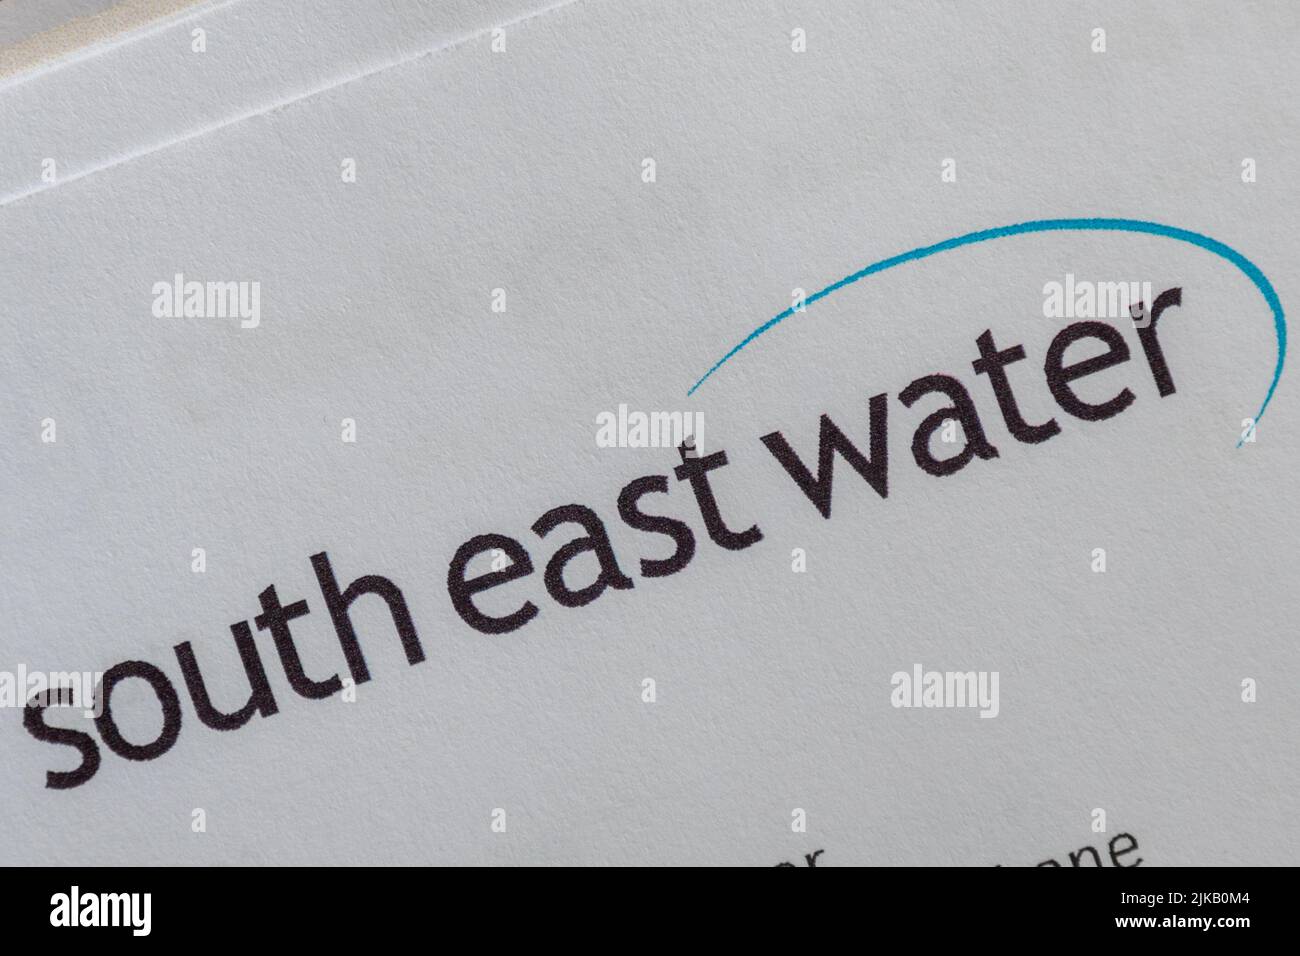 South East Water Bill or Letter, 2022, England, Großbritannien. Haushaltsrechnungen während der Lebenshaltungskrise Stockfoto